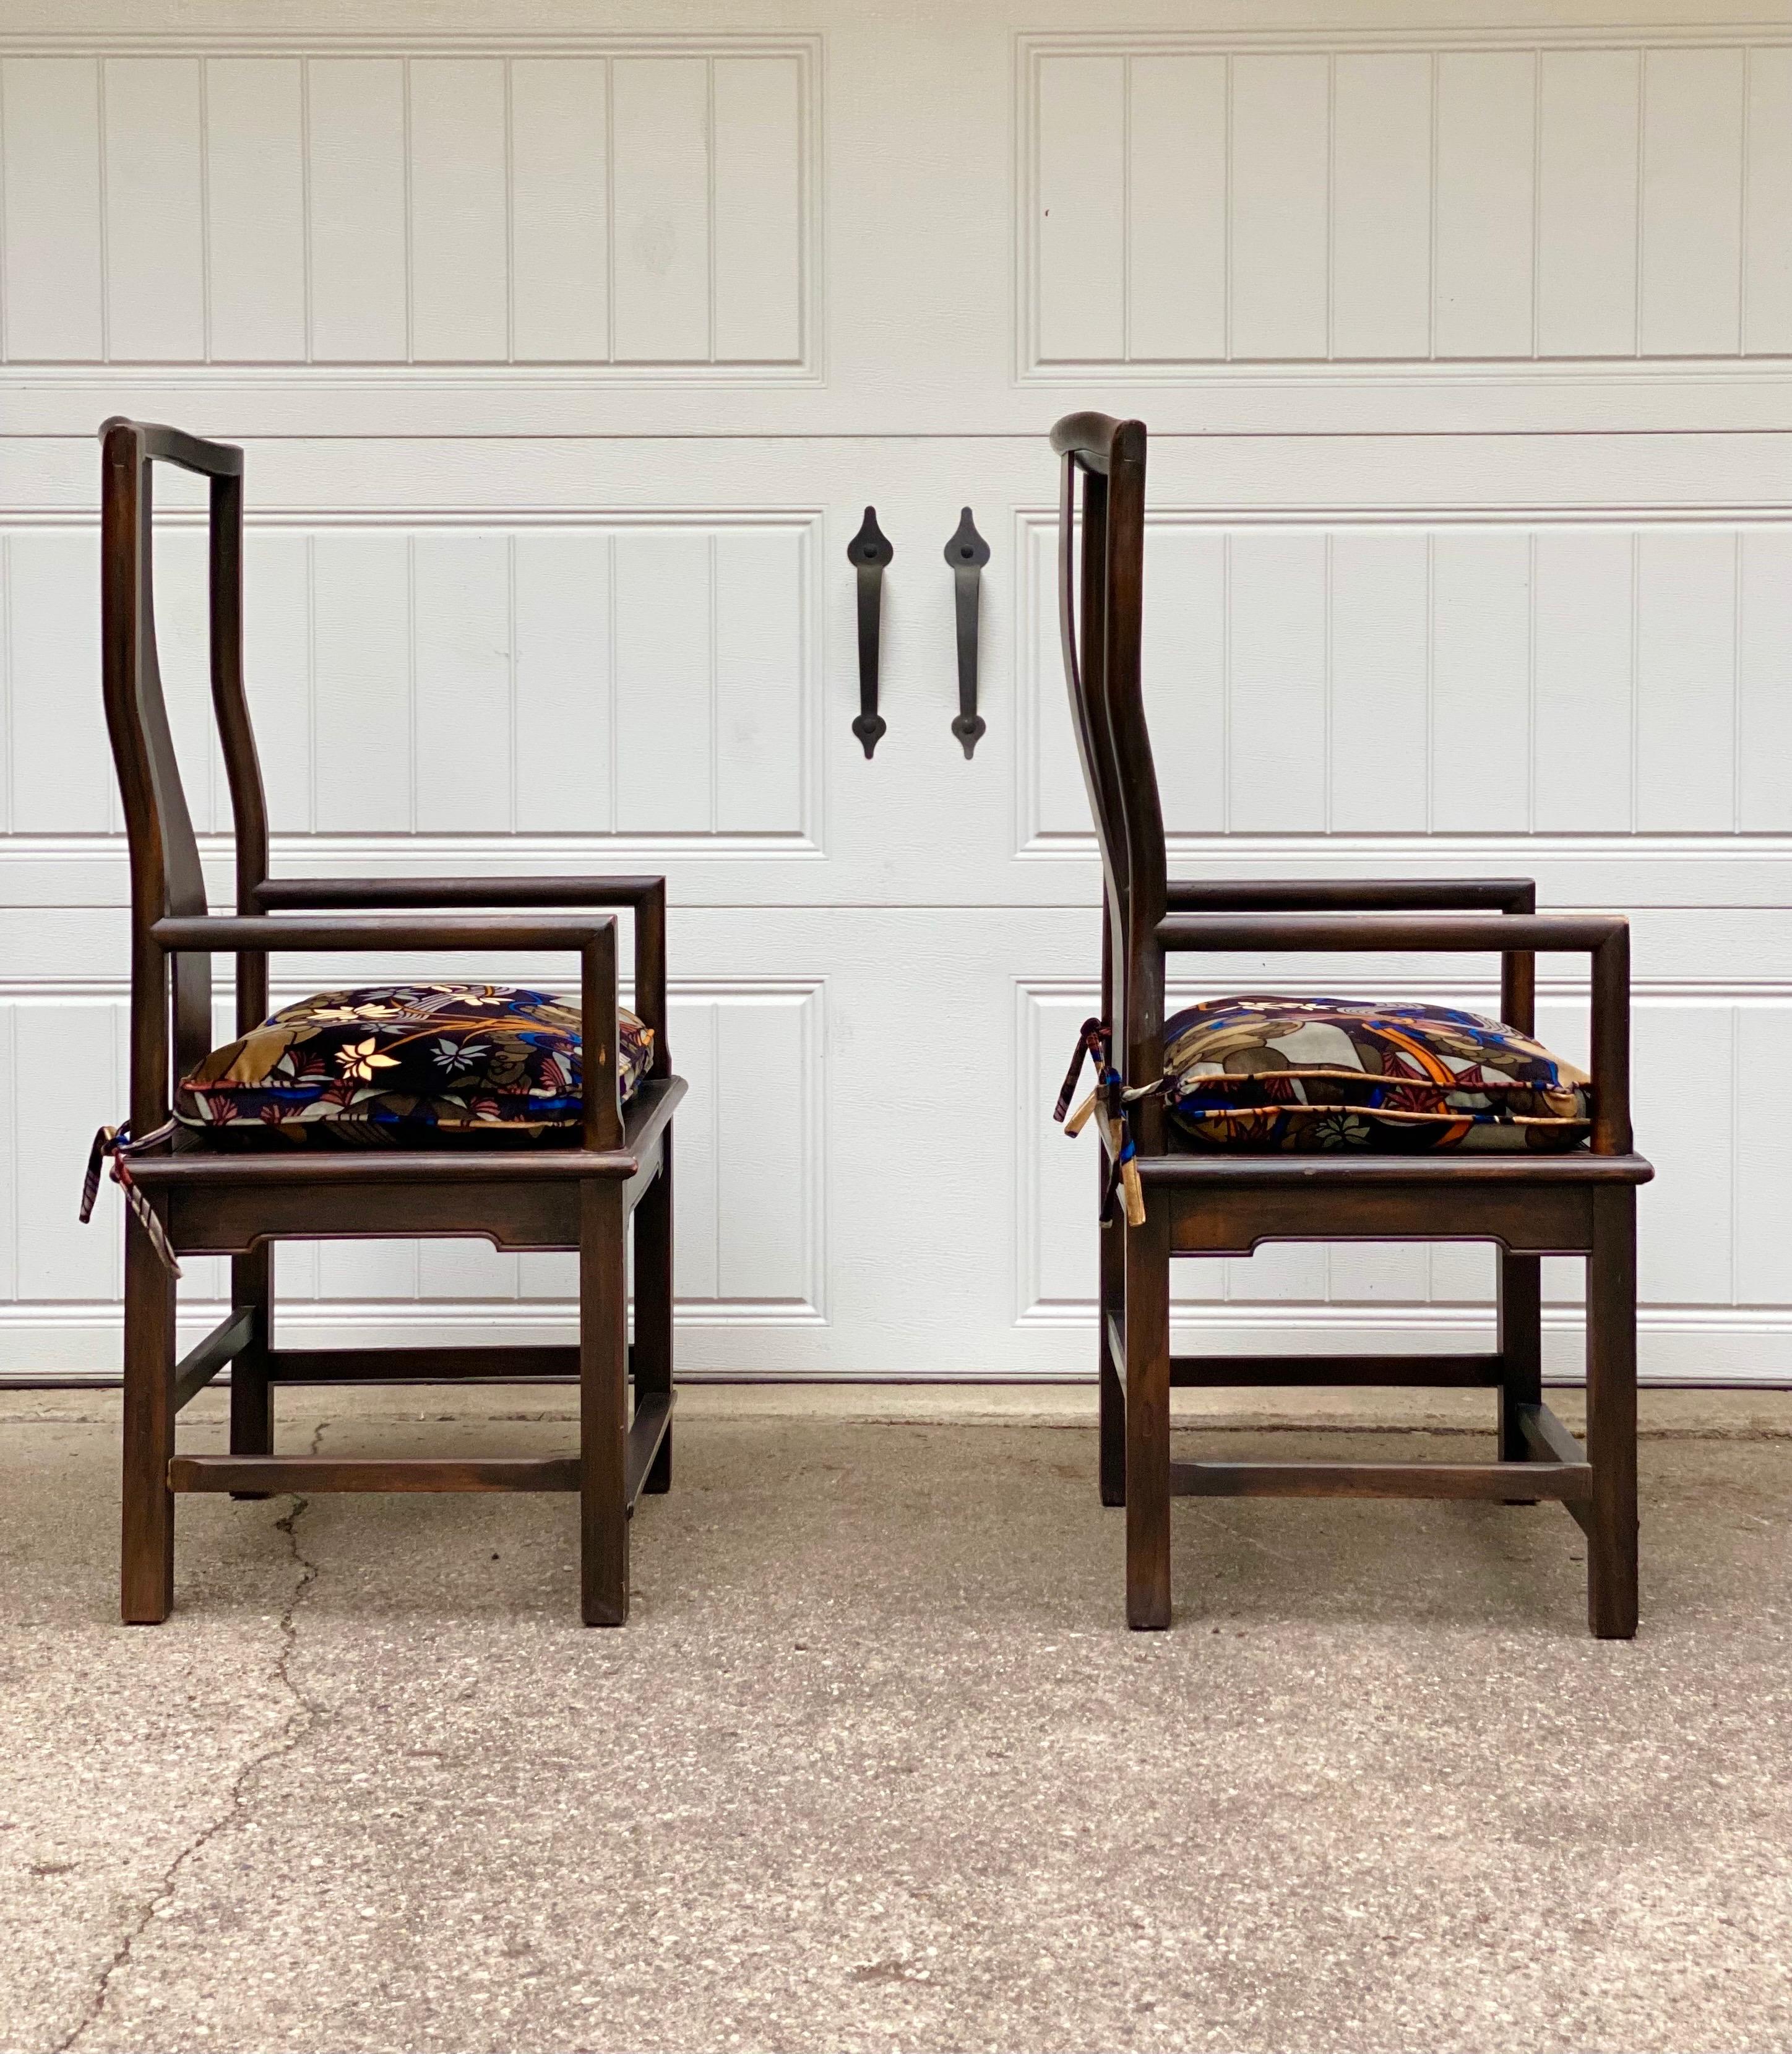 Wir freuen uns sehr, ein Set von Vintage-Stühlen aus den 1960er Jahren anbieten zu können. Dieses Paar hat ein anmutiges und elegantes Aussehen, das die künstlerische Sensibilität widerspiegelt, die man oft bei asiatischen Möbeln findet. Ein